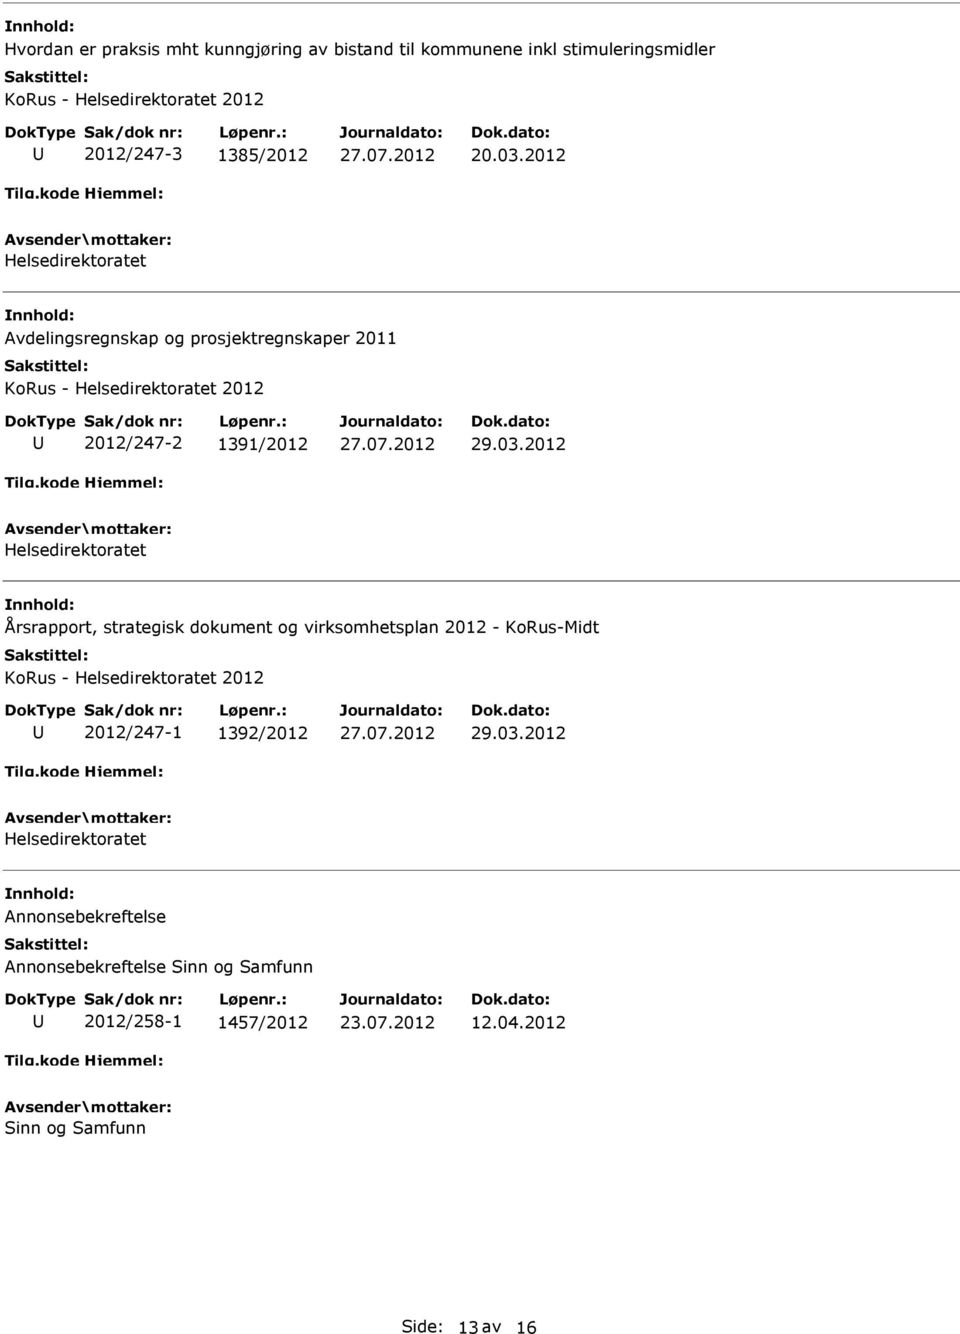 2012 Helsedirektoratet Årsrapport, strategisk dokument og virksomhetsplan 2012 - -Midt - Helsedirektoratet 2012 2012/247-1 1392/2012 29.